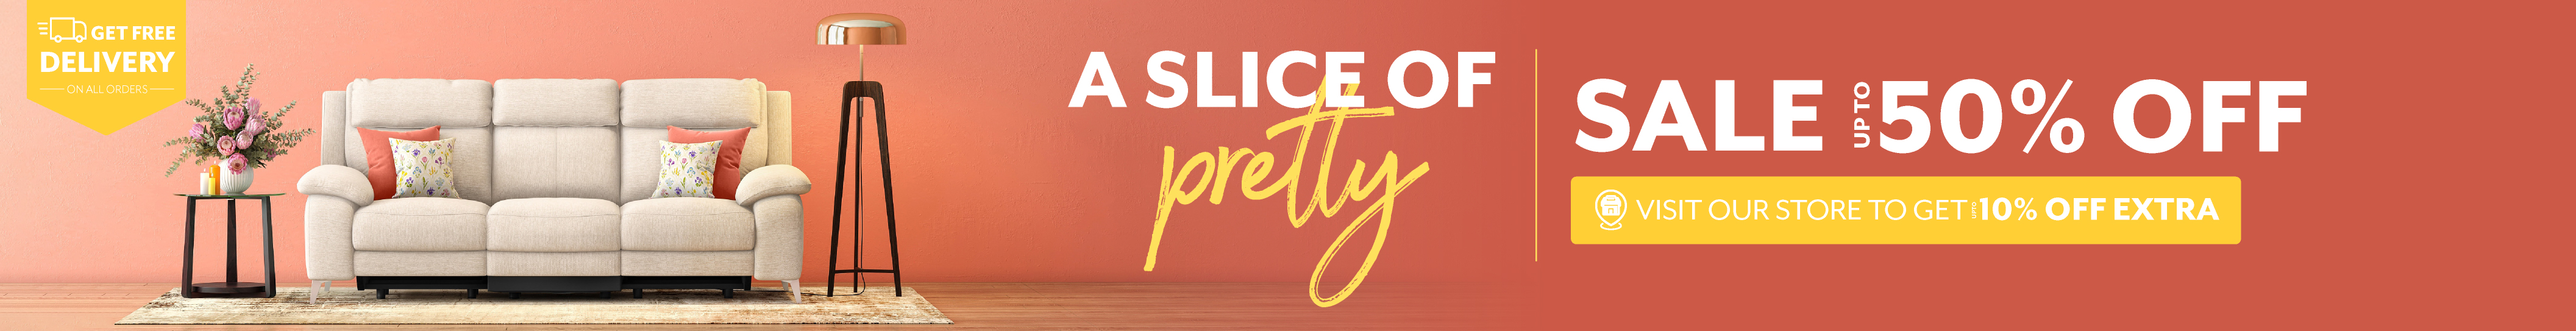 Slice-of-preety-LP-Desk